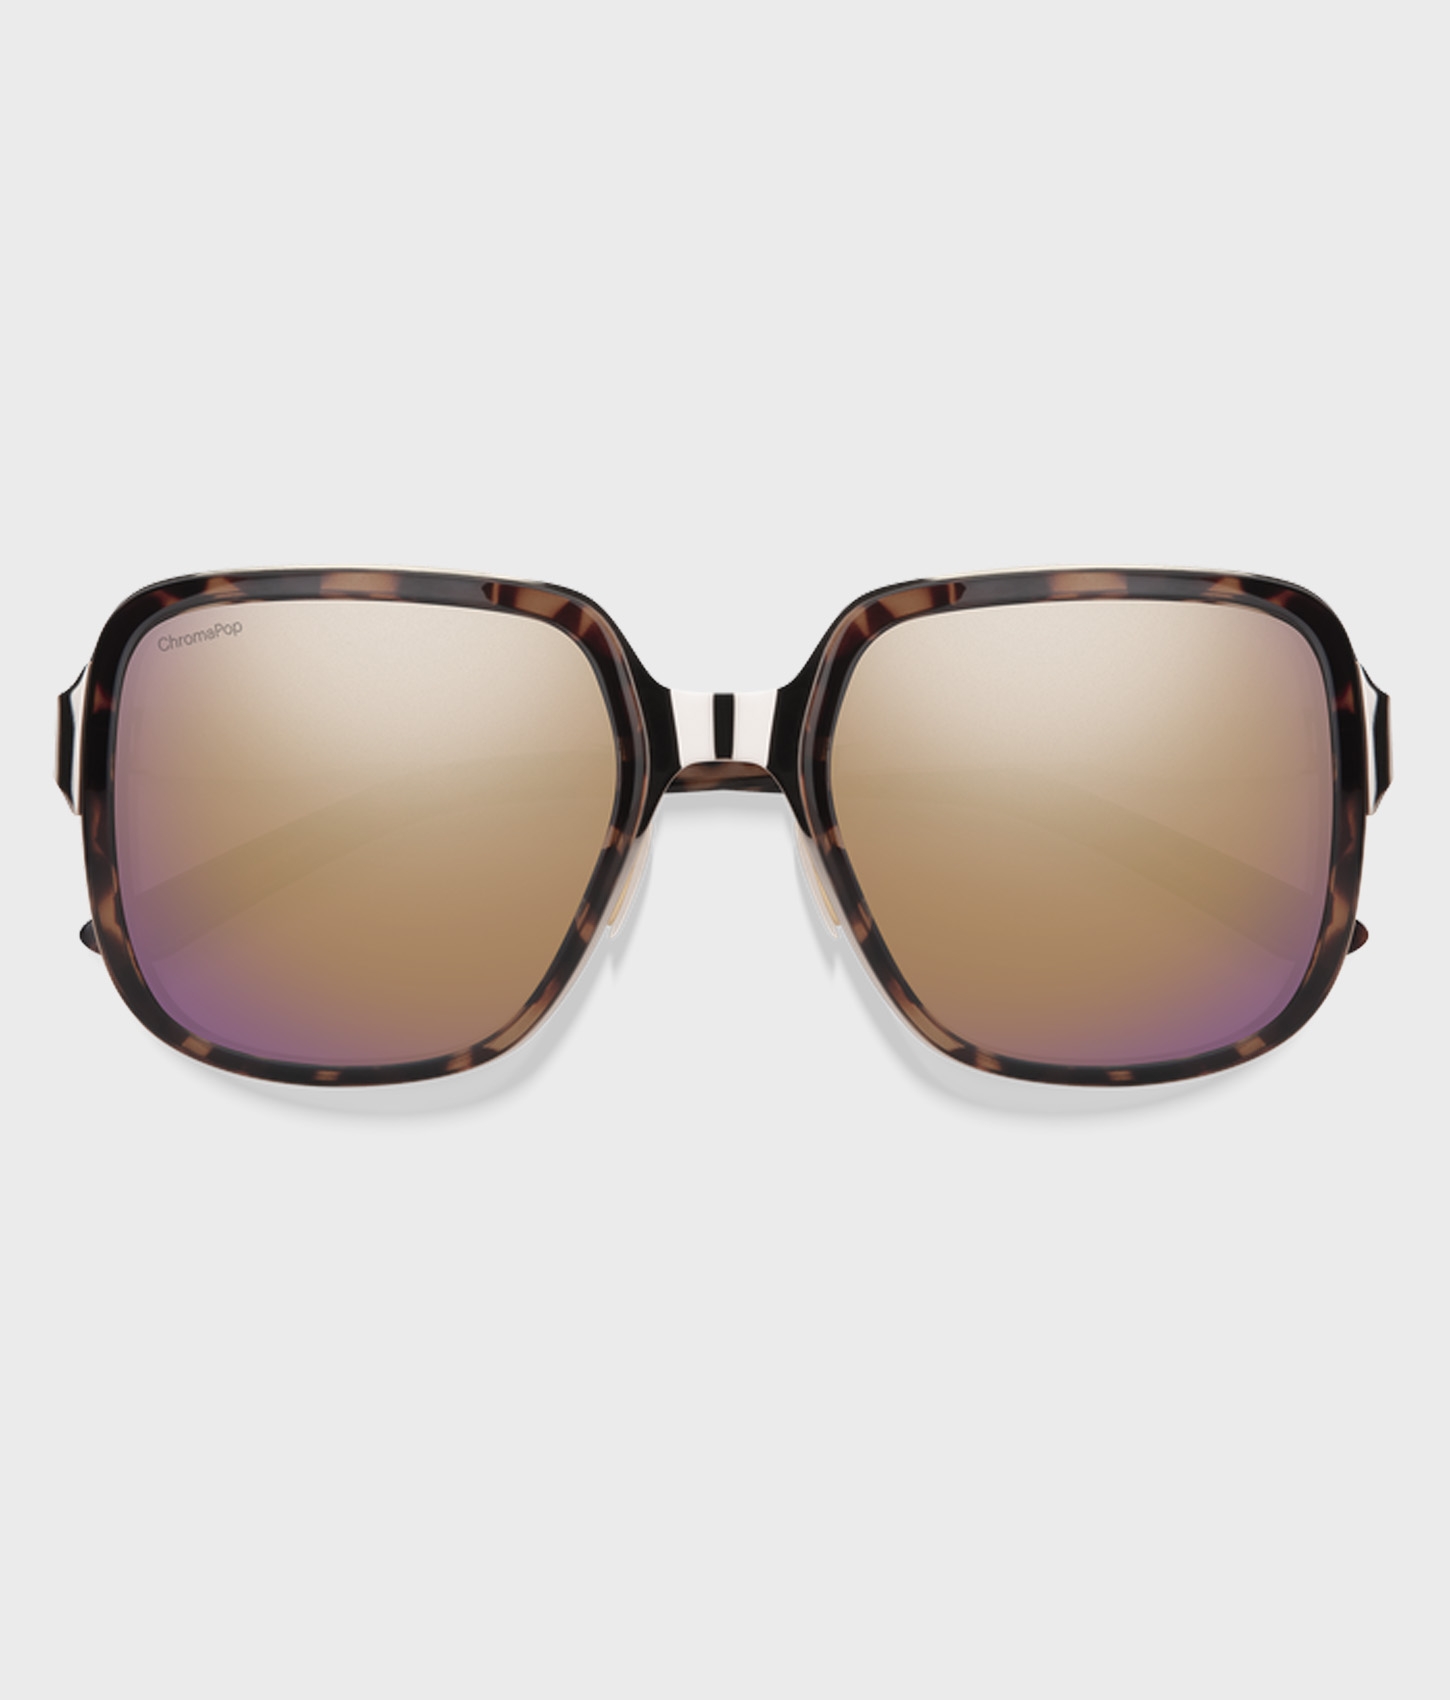 Aveline Polarized Sunglasses